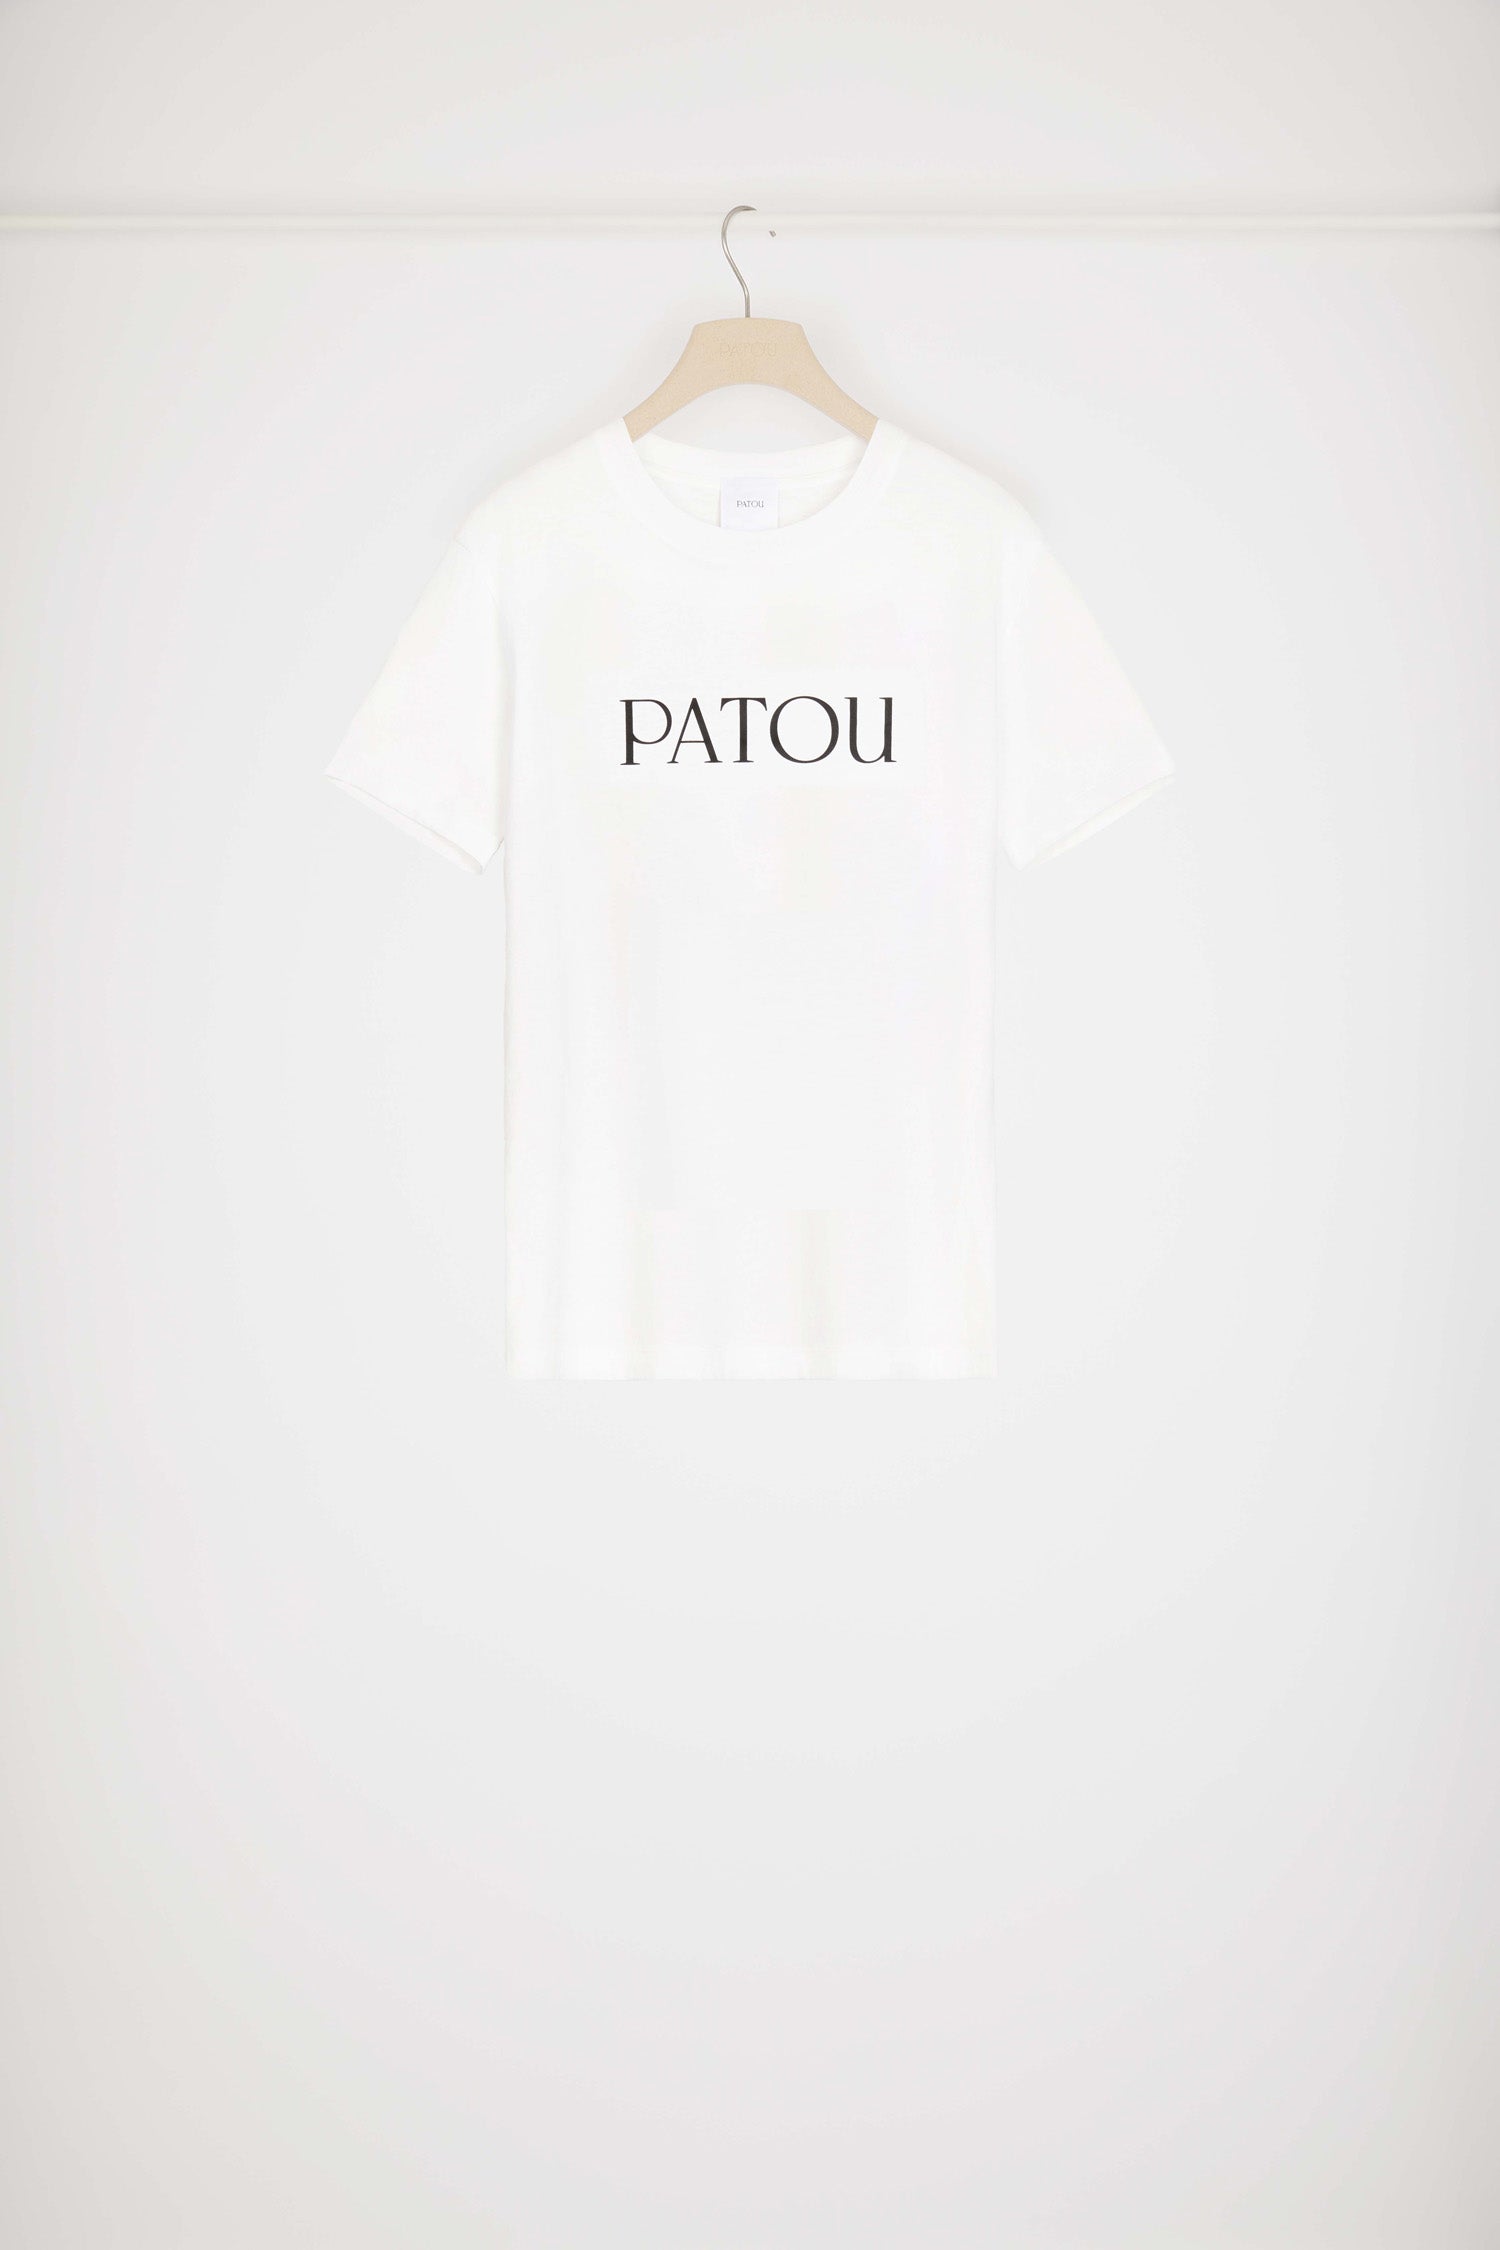 Patou | Patou logo t-shirt in organic cotton